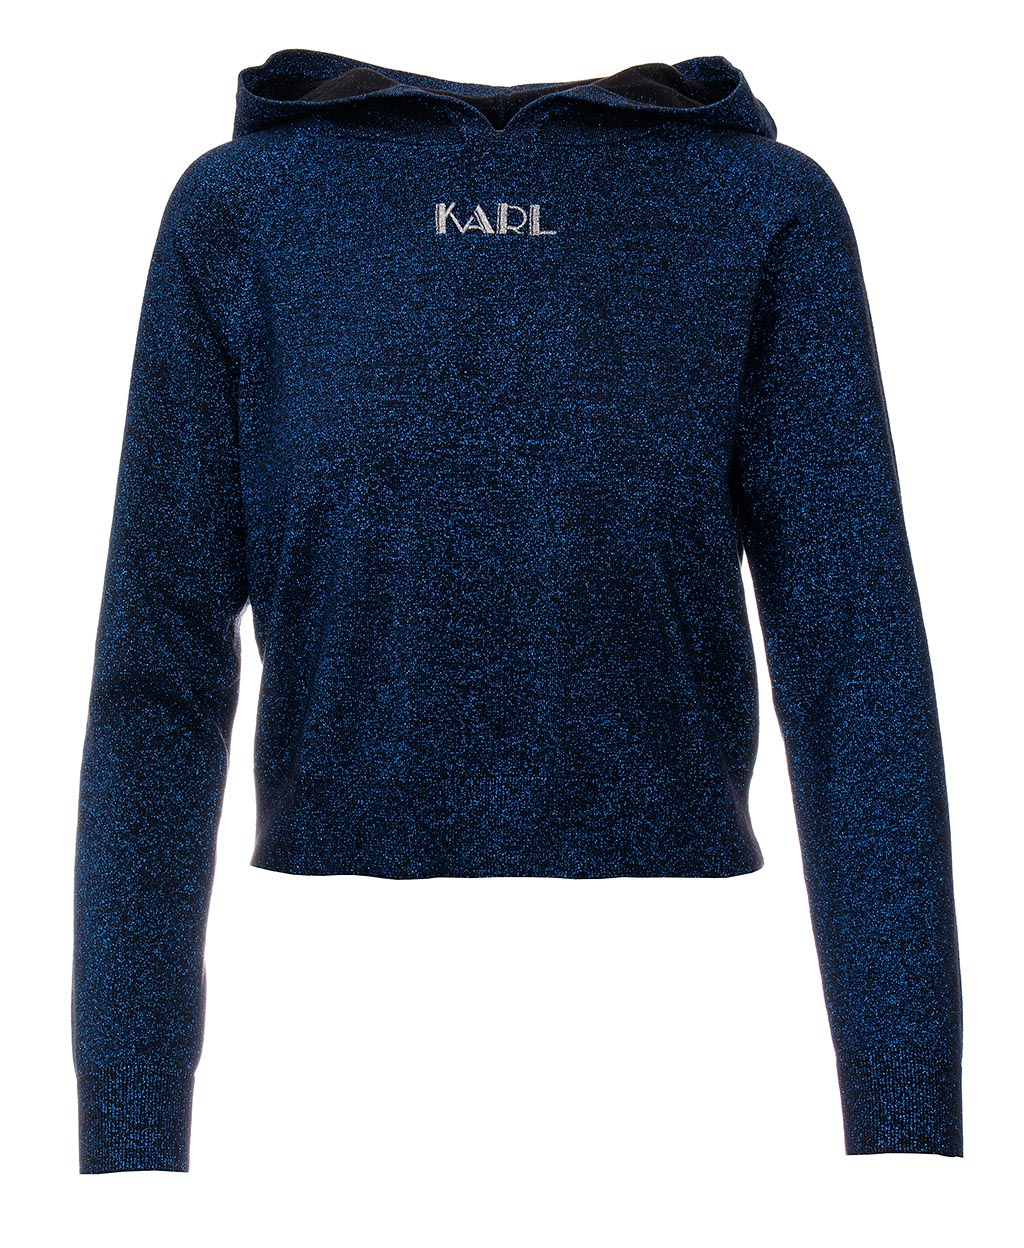 Karl Lagerfeld dámský mikinový svetr s kapucí Sparkle Hooded modrý Velikost: M